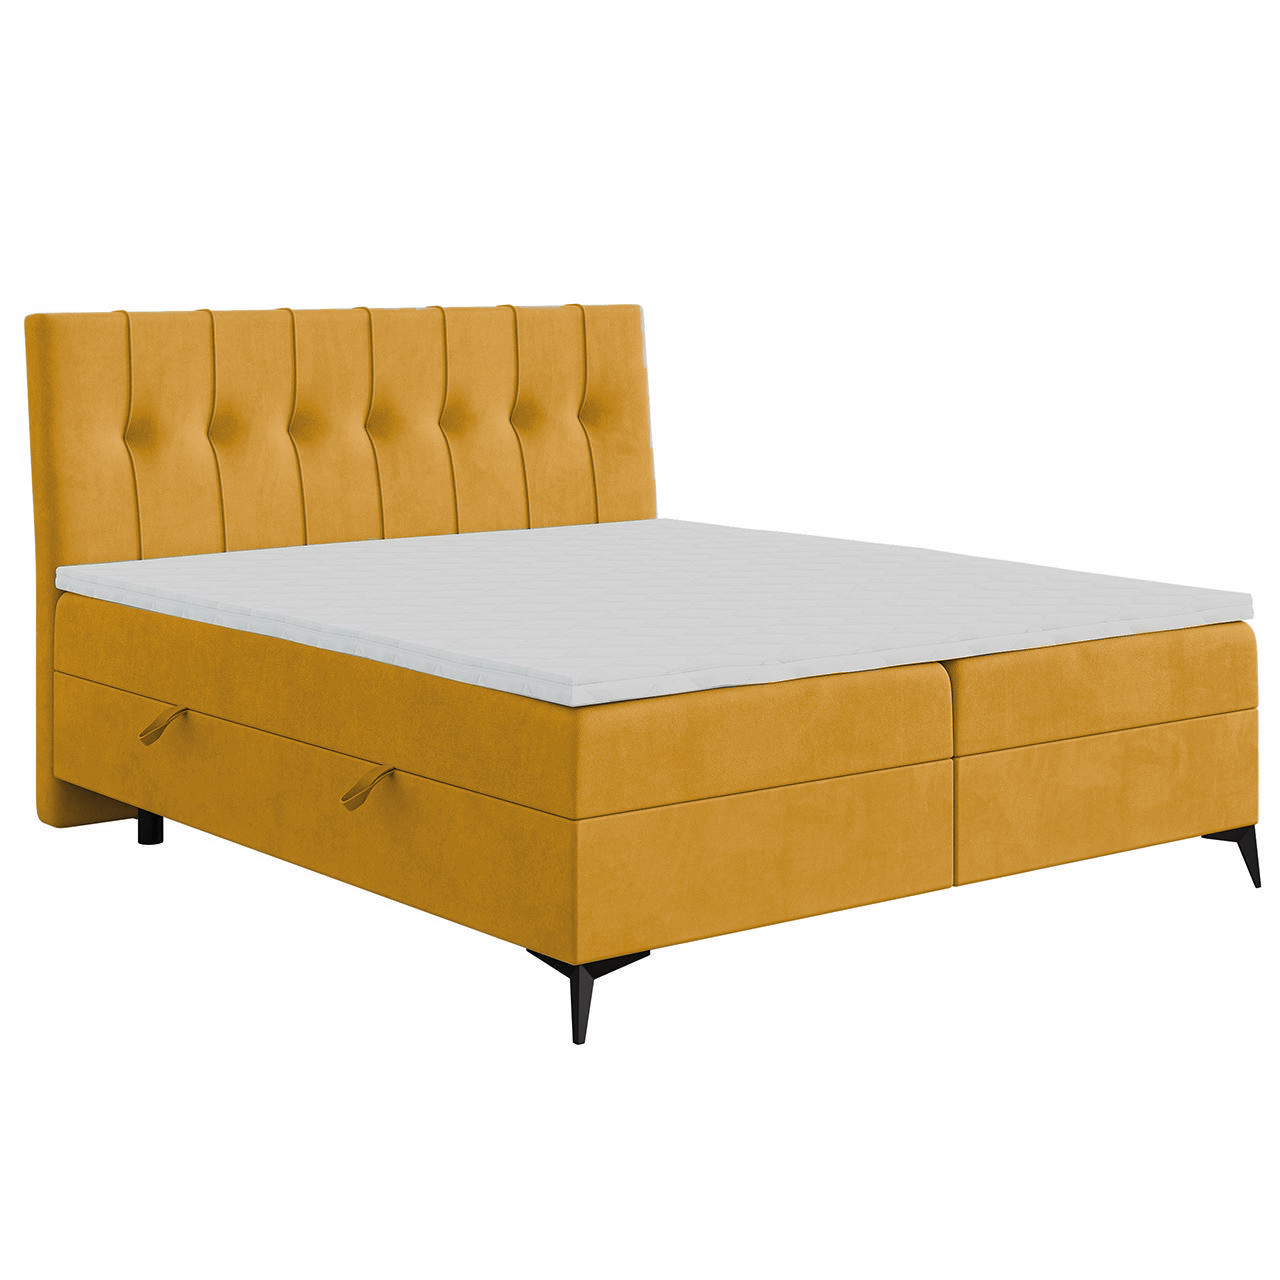 Upholstered bed LIME 180x200 magic velvet 2215